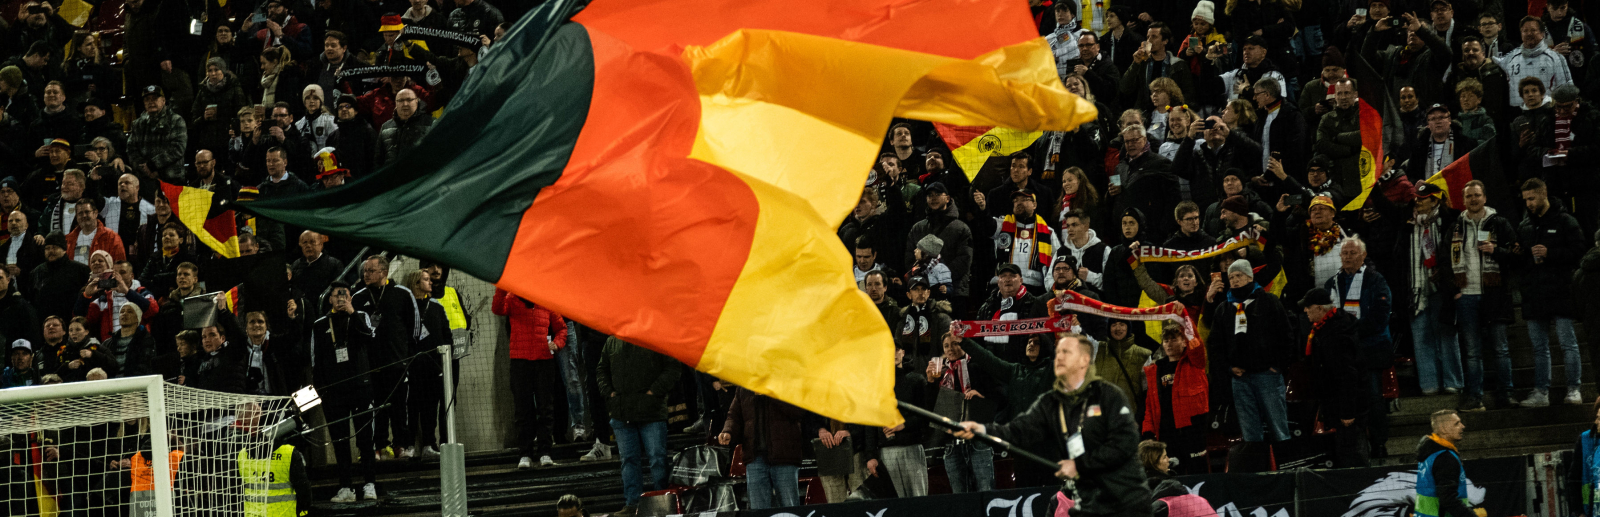 Eine Deutschland-Flagge wird von Fans bei einem Länderspiel präsentiert